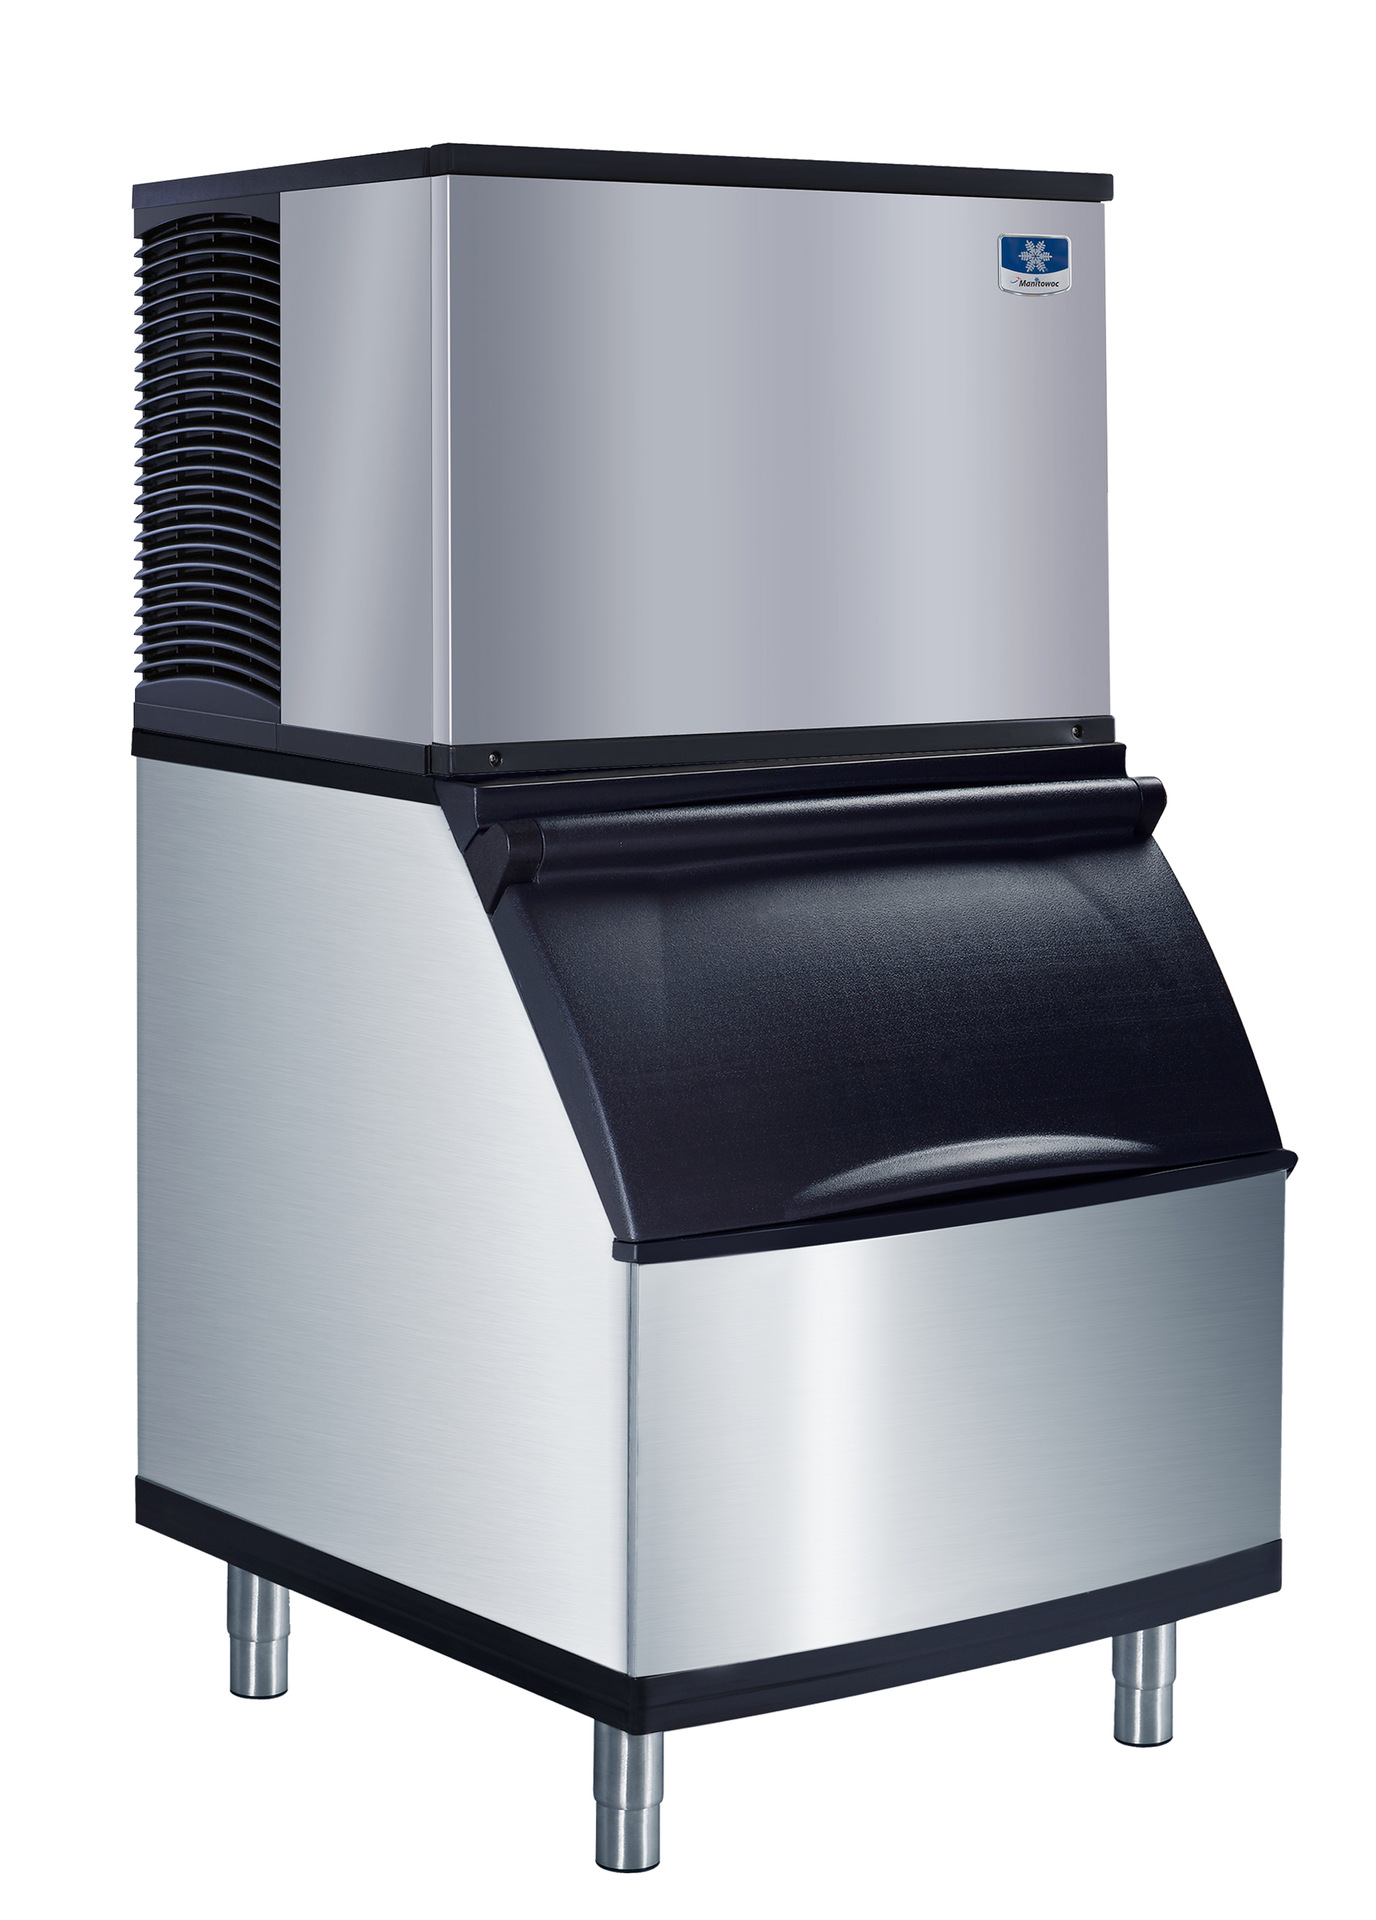 万利多商用大型制冰机 原装进口制冰机 大容量 分体式MD系列 正品